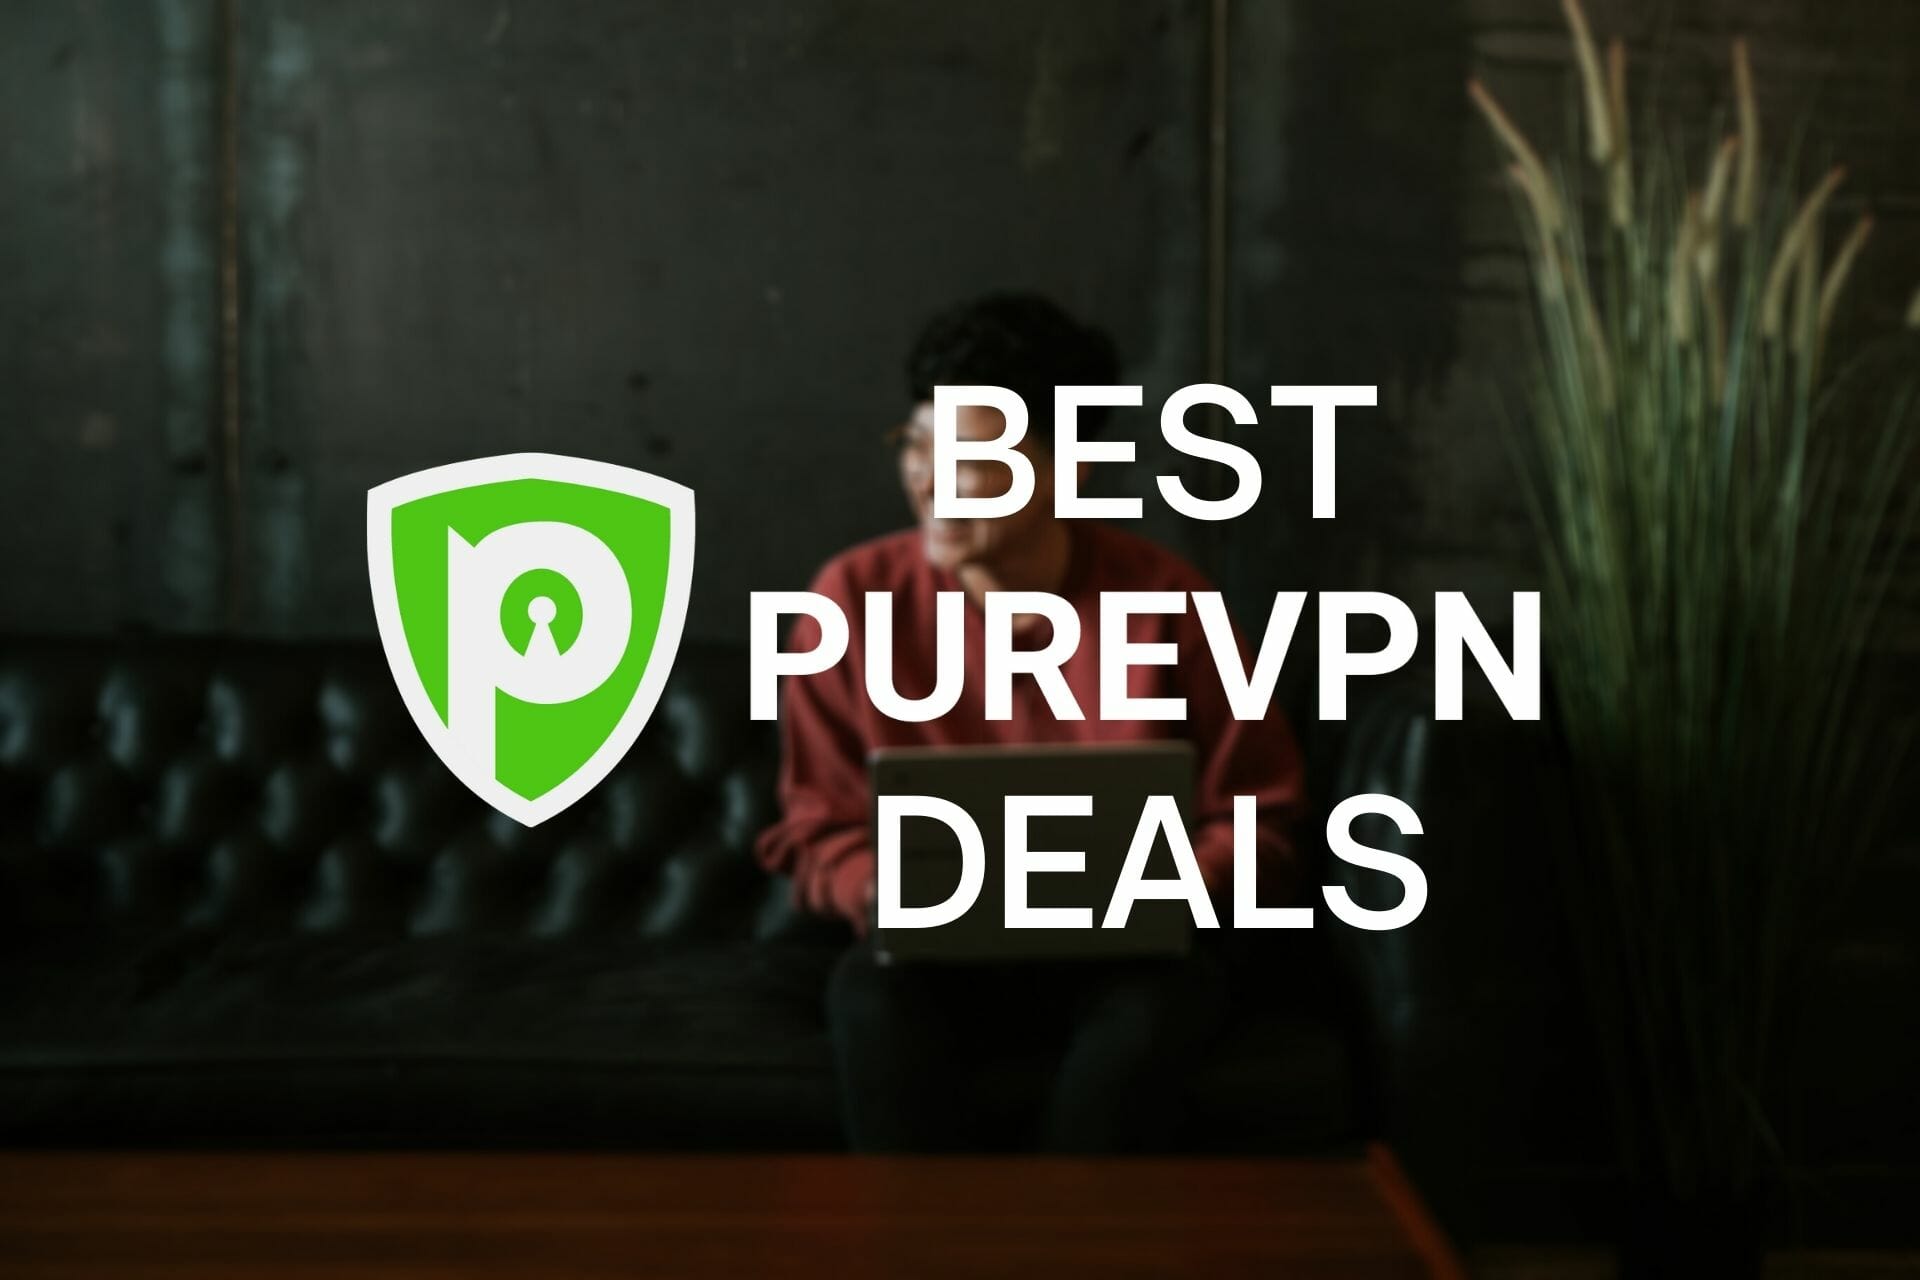 PureVPN Deals